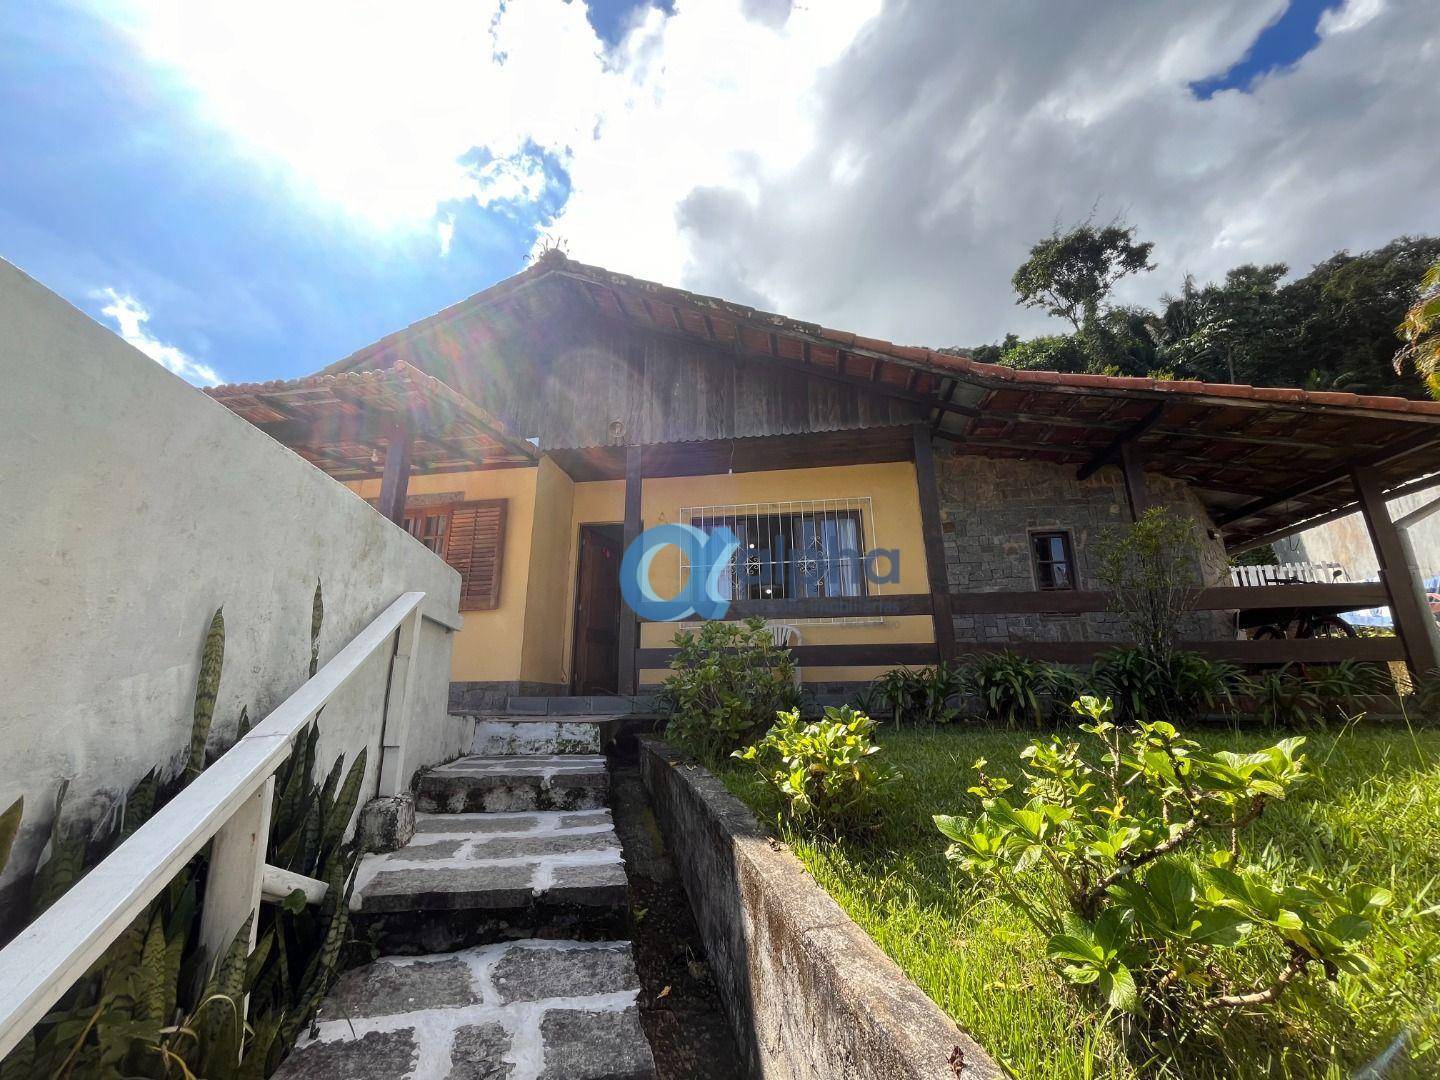 Casa à venda em Quitandinha, Petrópolis - RJ - Foto 6